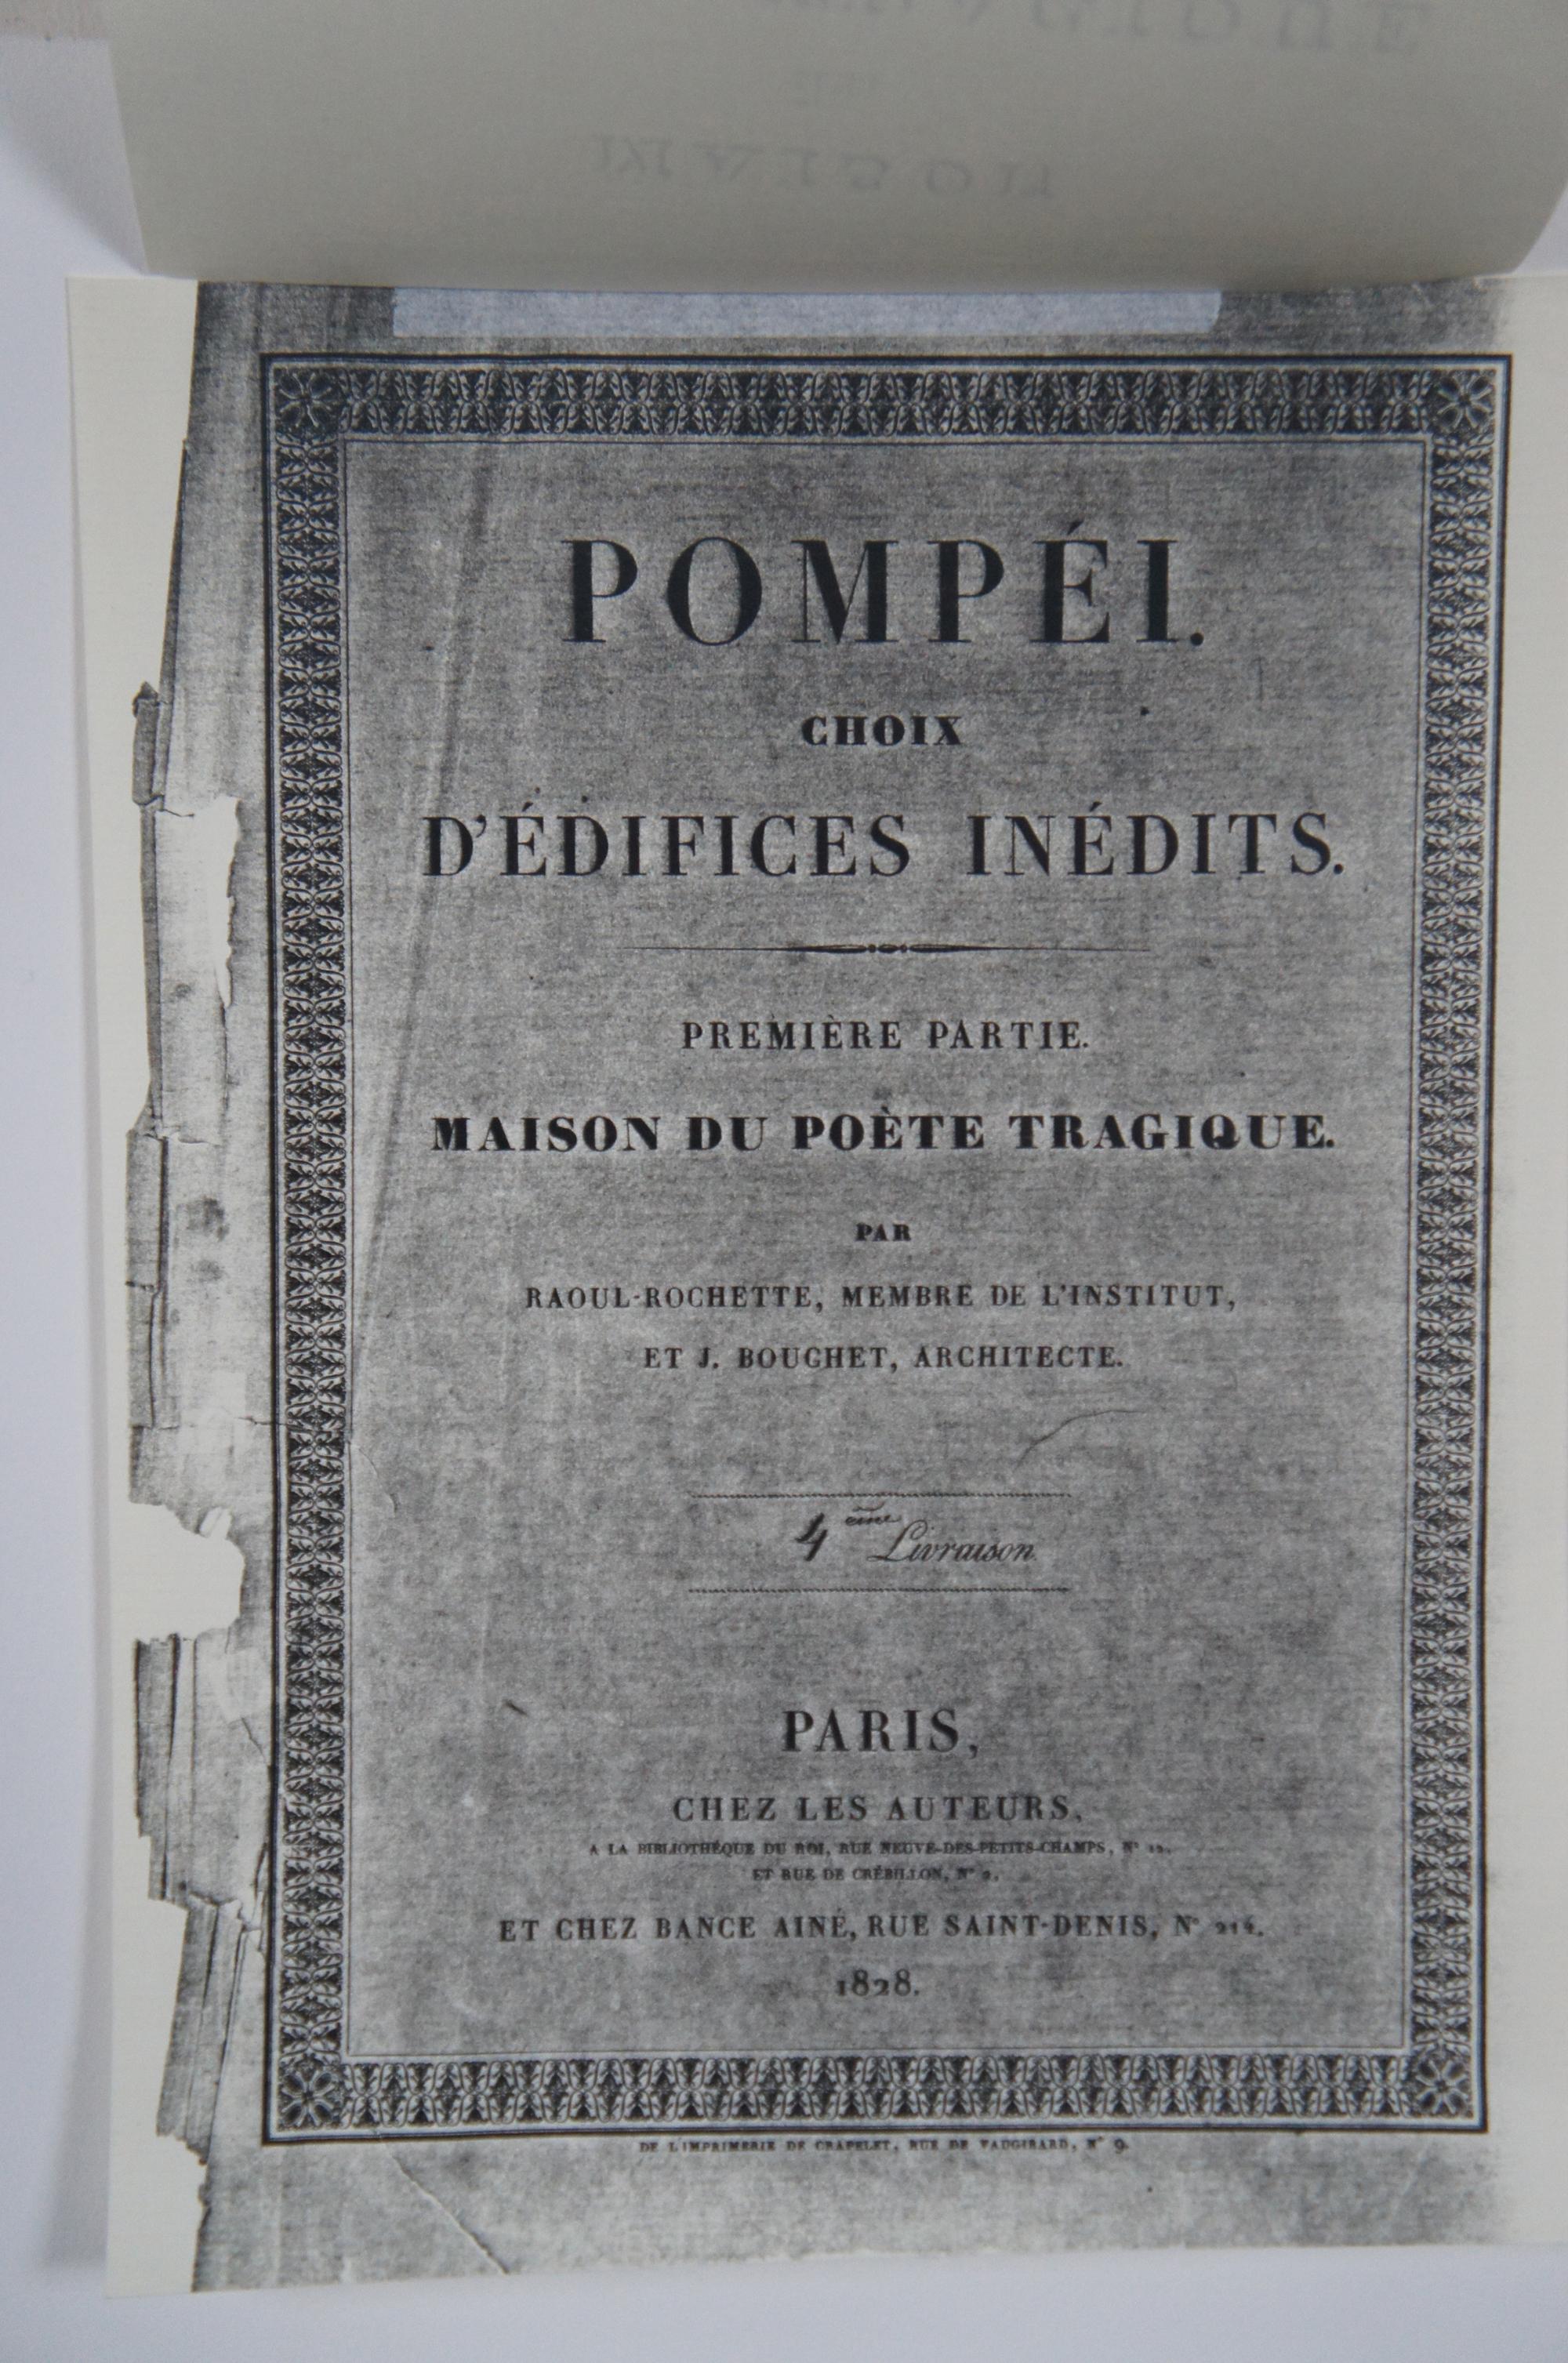 Paper 2 Antique Architectural Maison Poete Tragique Pompei Engraving Rouchette Bouchet